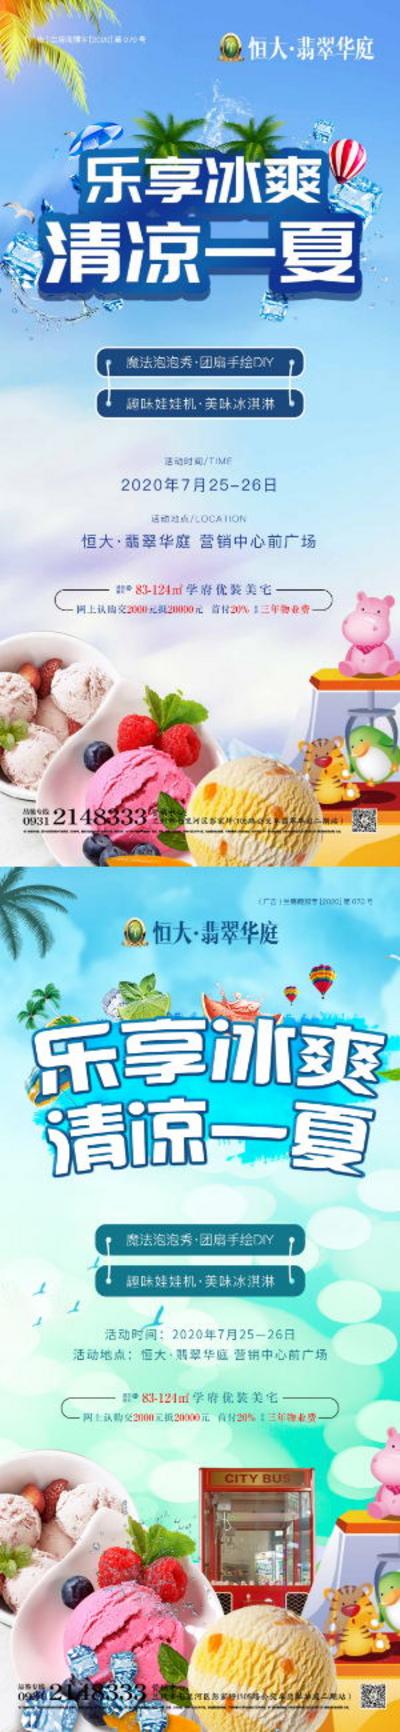 南门网 广告 海报 房地产 冰淇淋 夹娃娃 DIY 冰爽 清凉 夏天 暖场活动 系列 冰爽